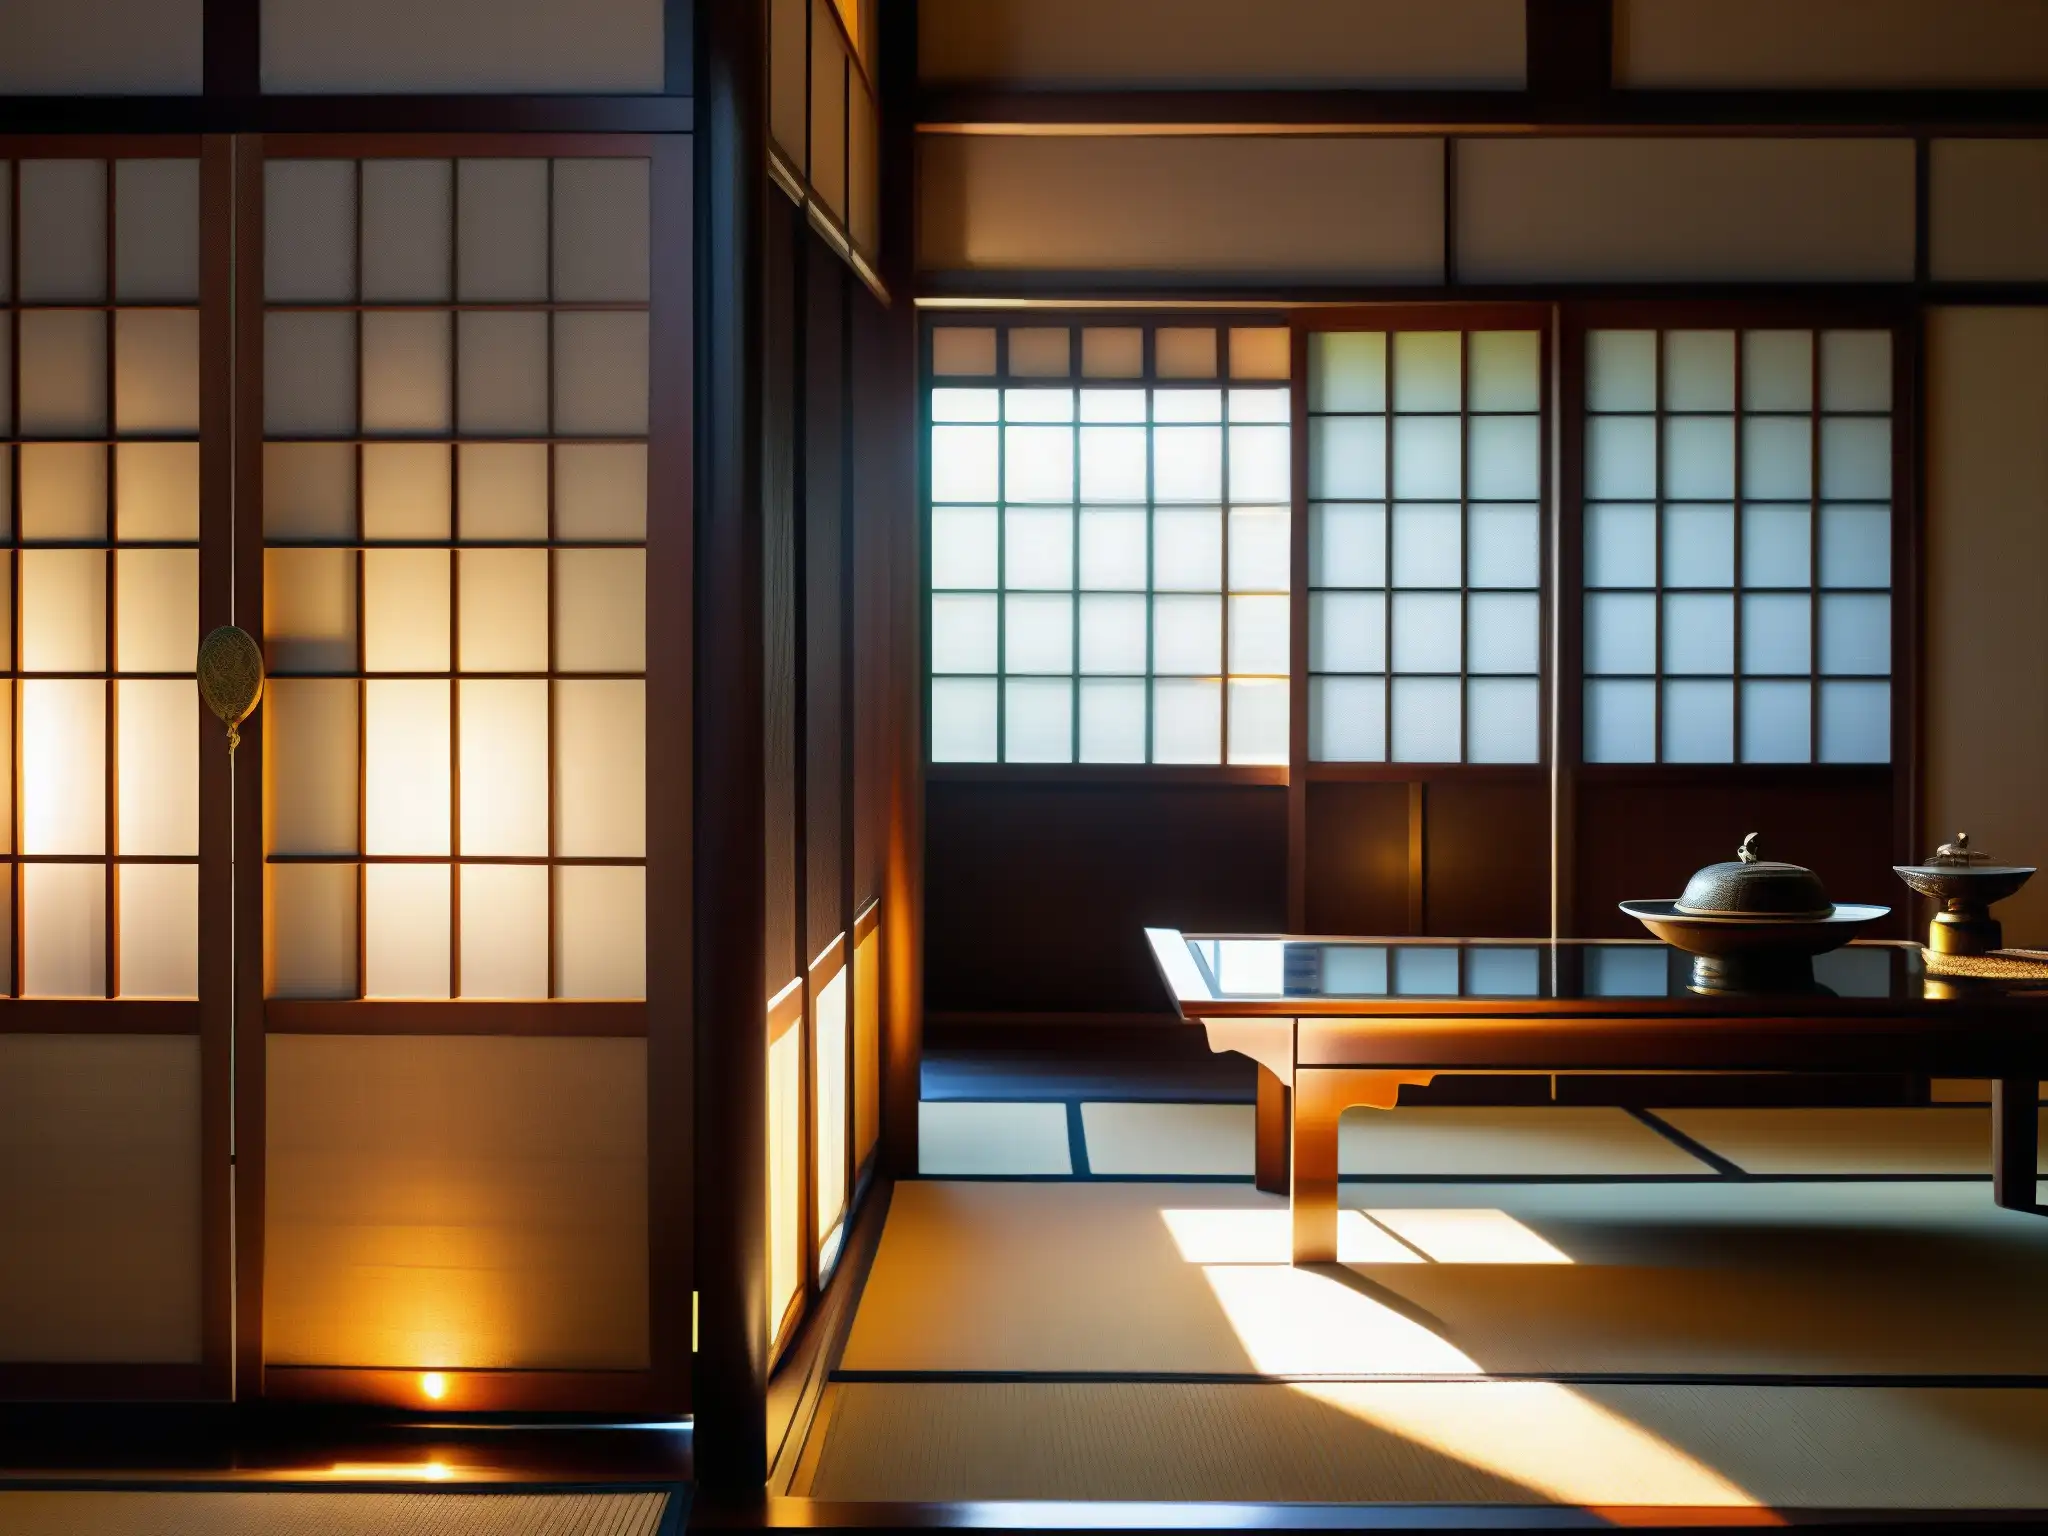 Una casa japonesa tradicional con espejos reflejando muebles antiguos y decoración, creando un juego de luz y sombra